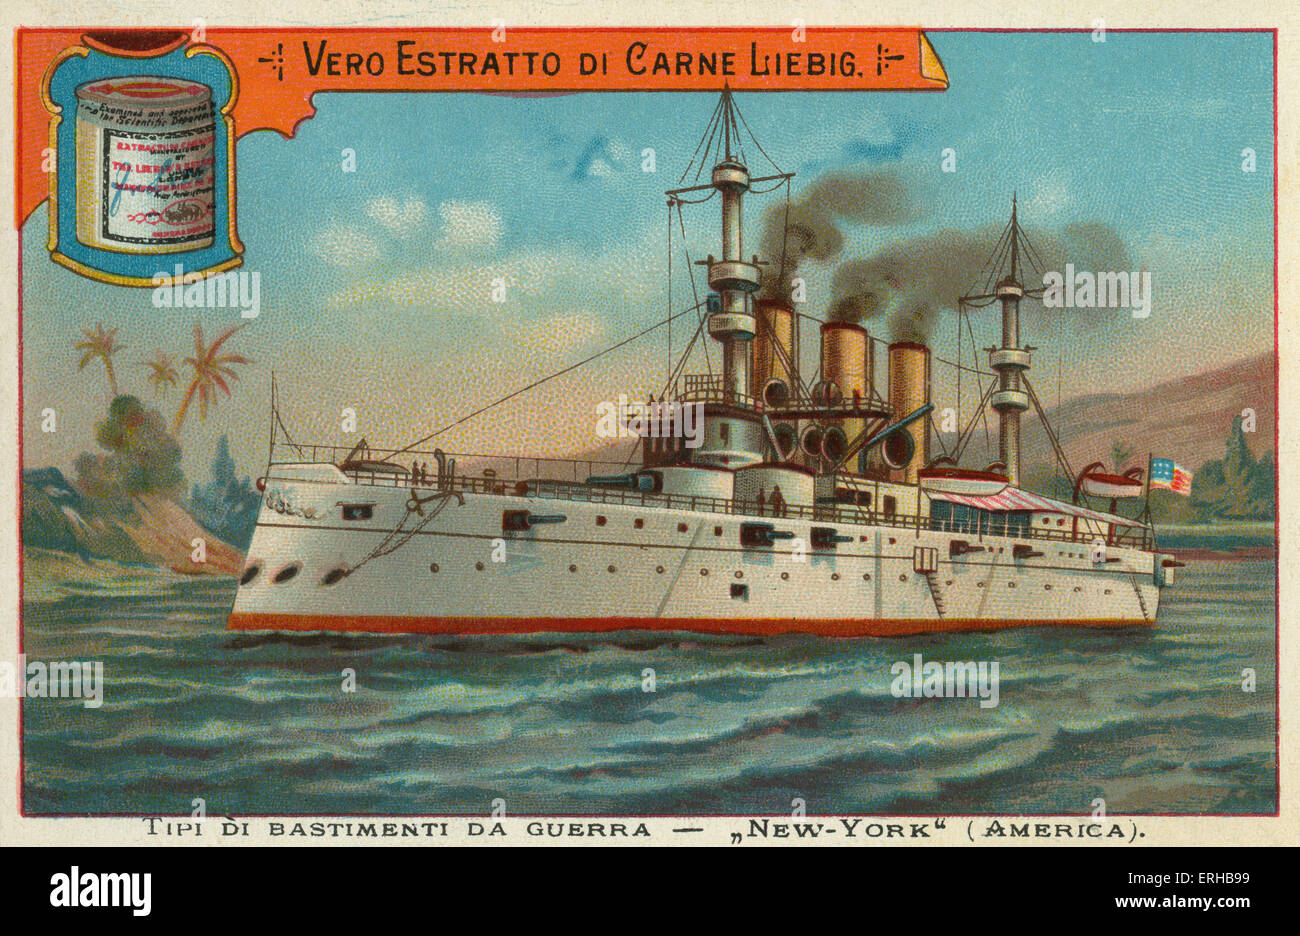 An American war ship - 'New York'. Liebig card, War Ships, 1897. Stock Photo